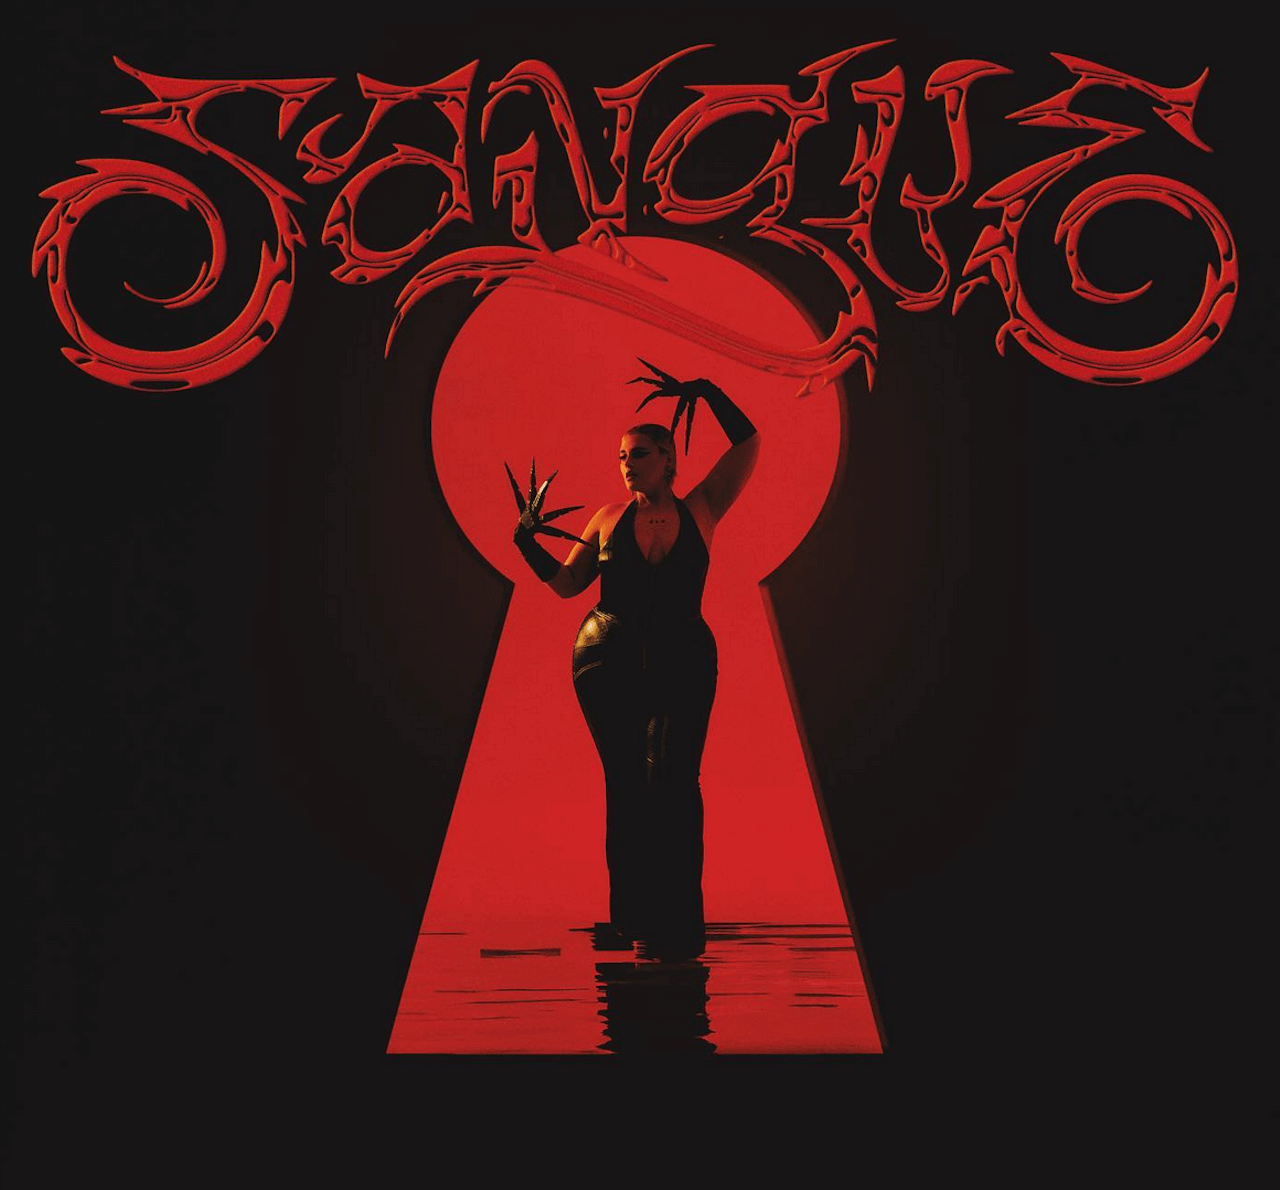 BigMama pubblica il nuovo album "Sangue" e manda una frecciatina diabolica - Sangue Big Mama - Gay.it